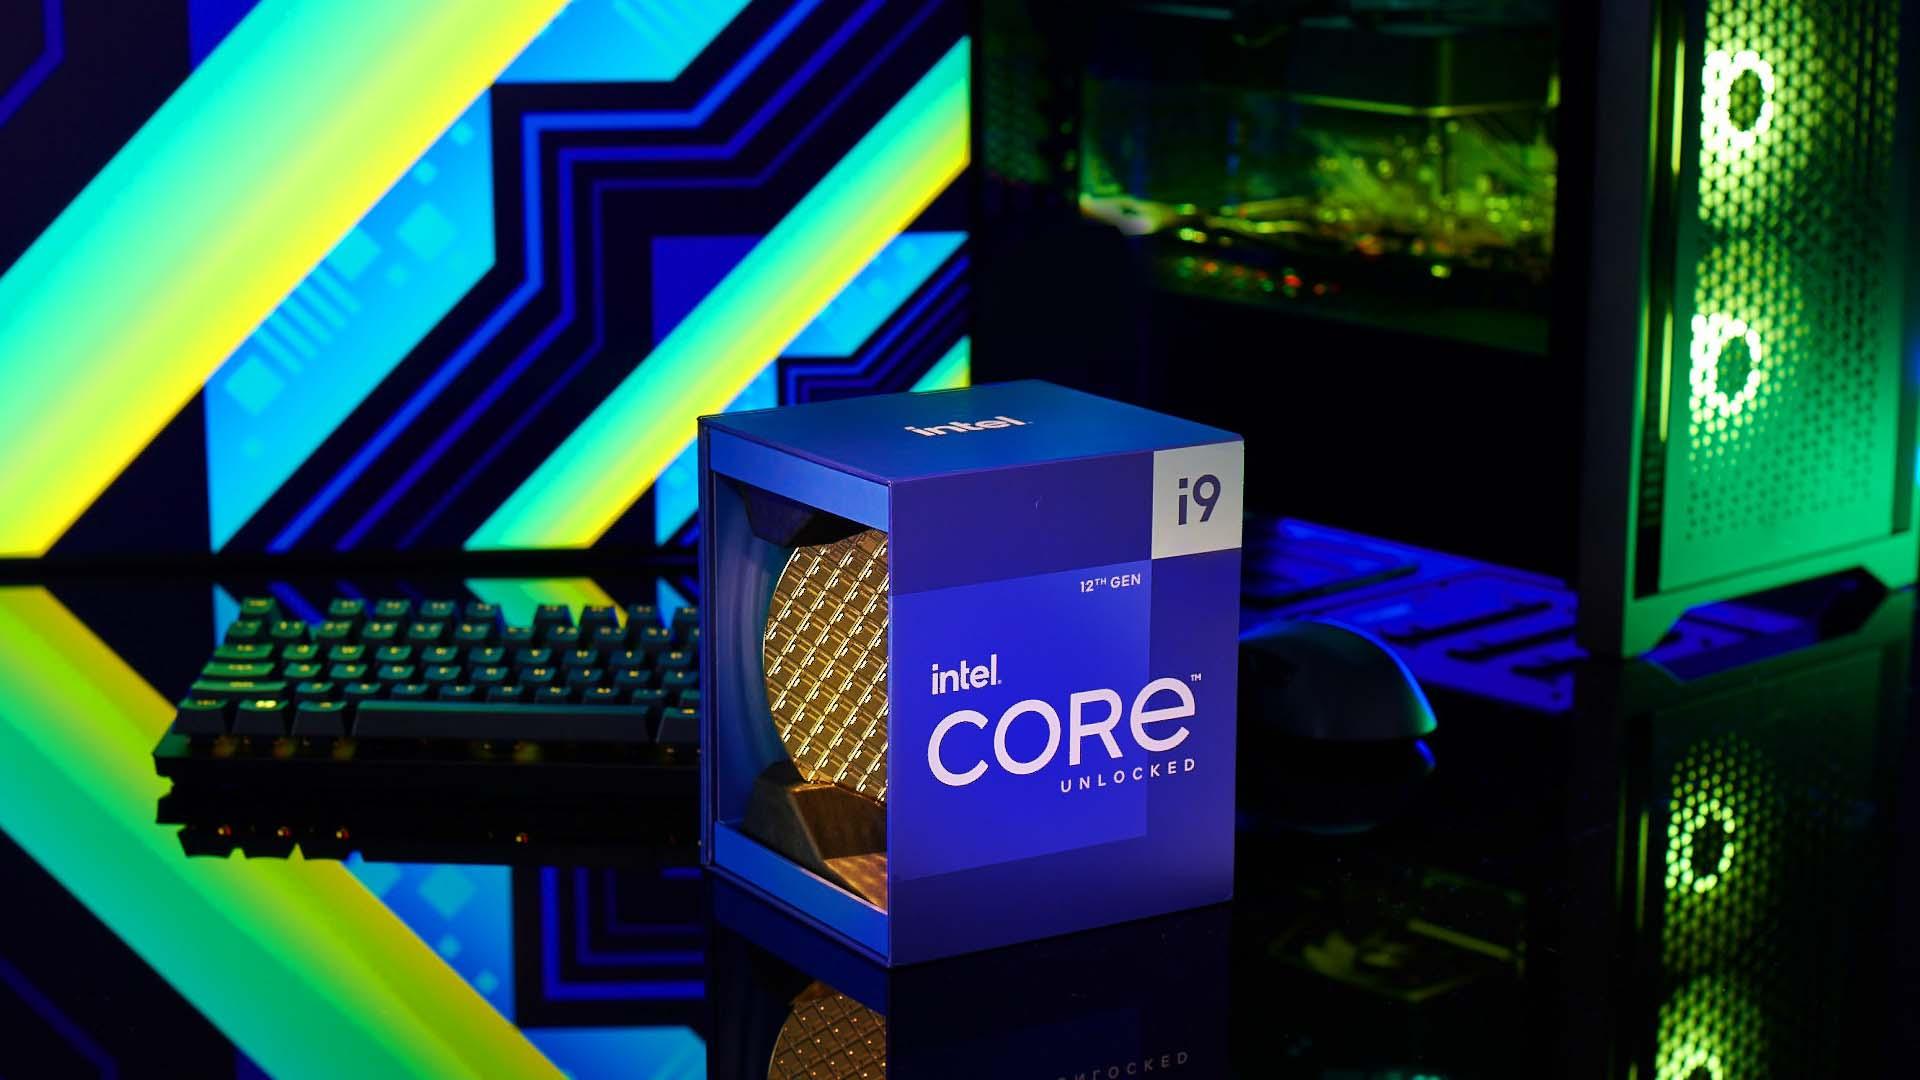 Intel Core i9 12th Gen